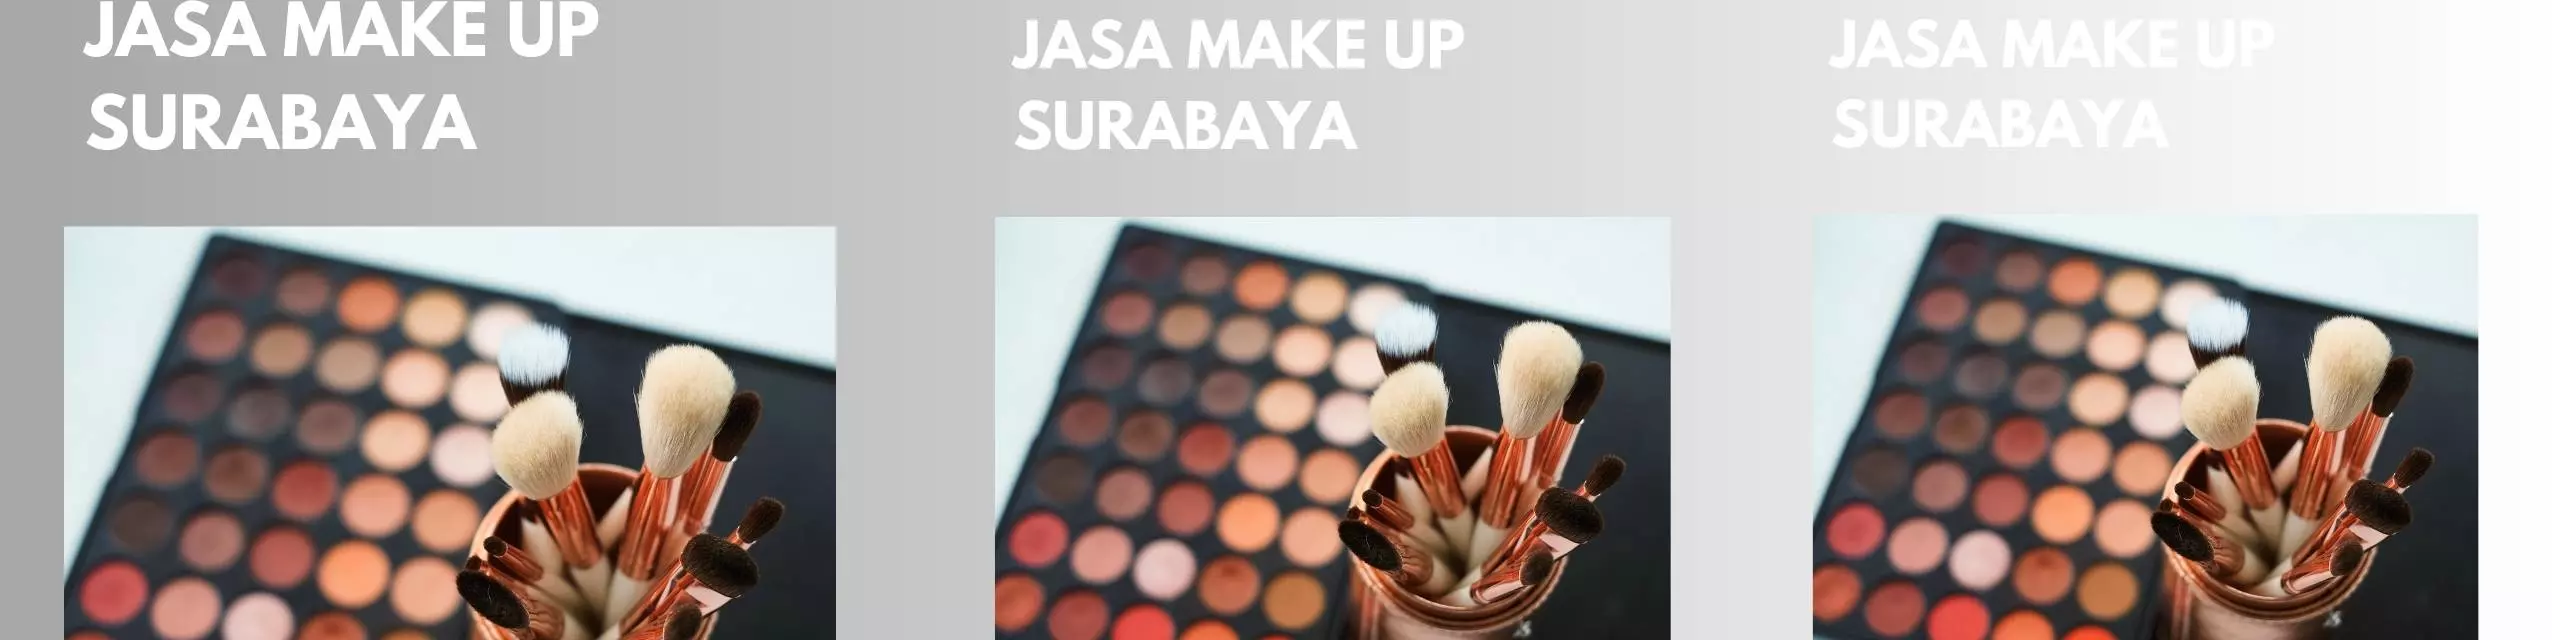 Surabaya make-up Services